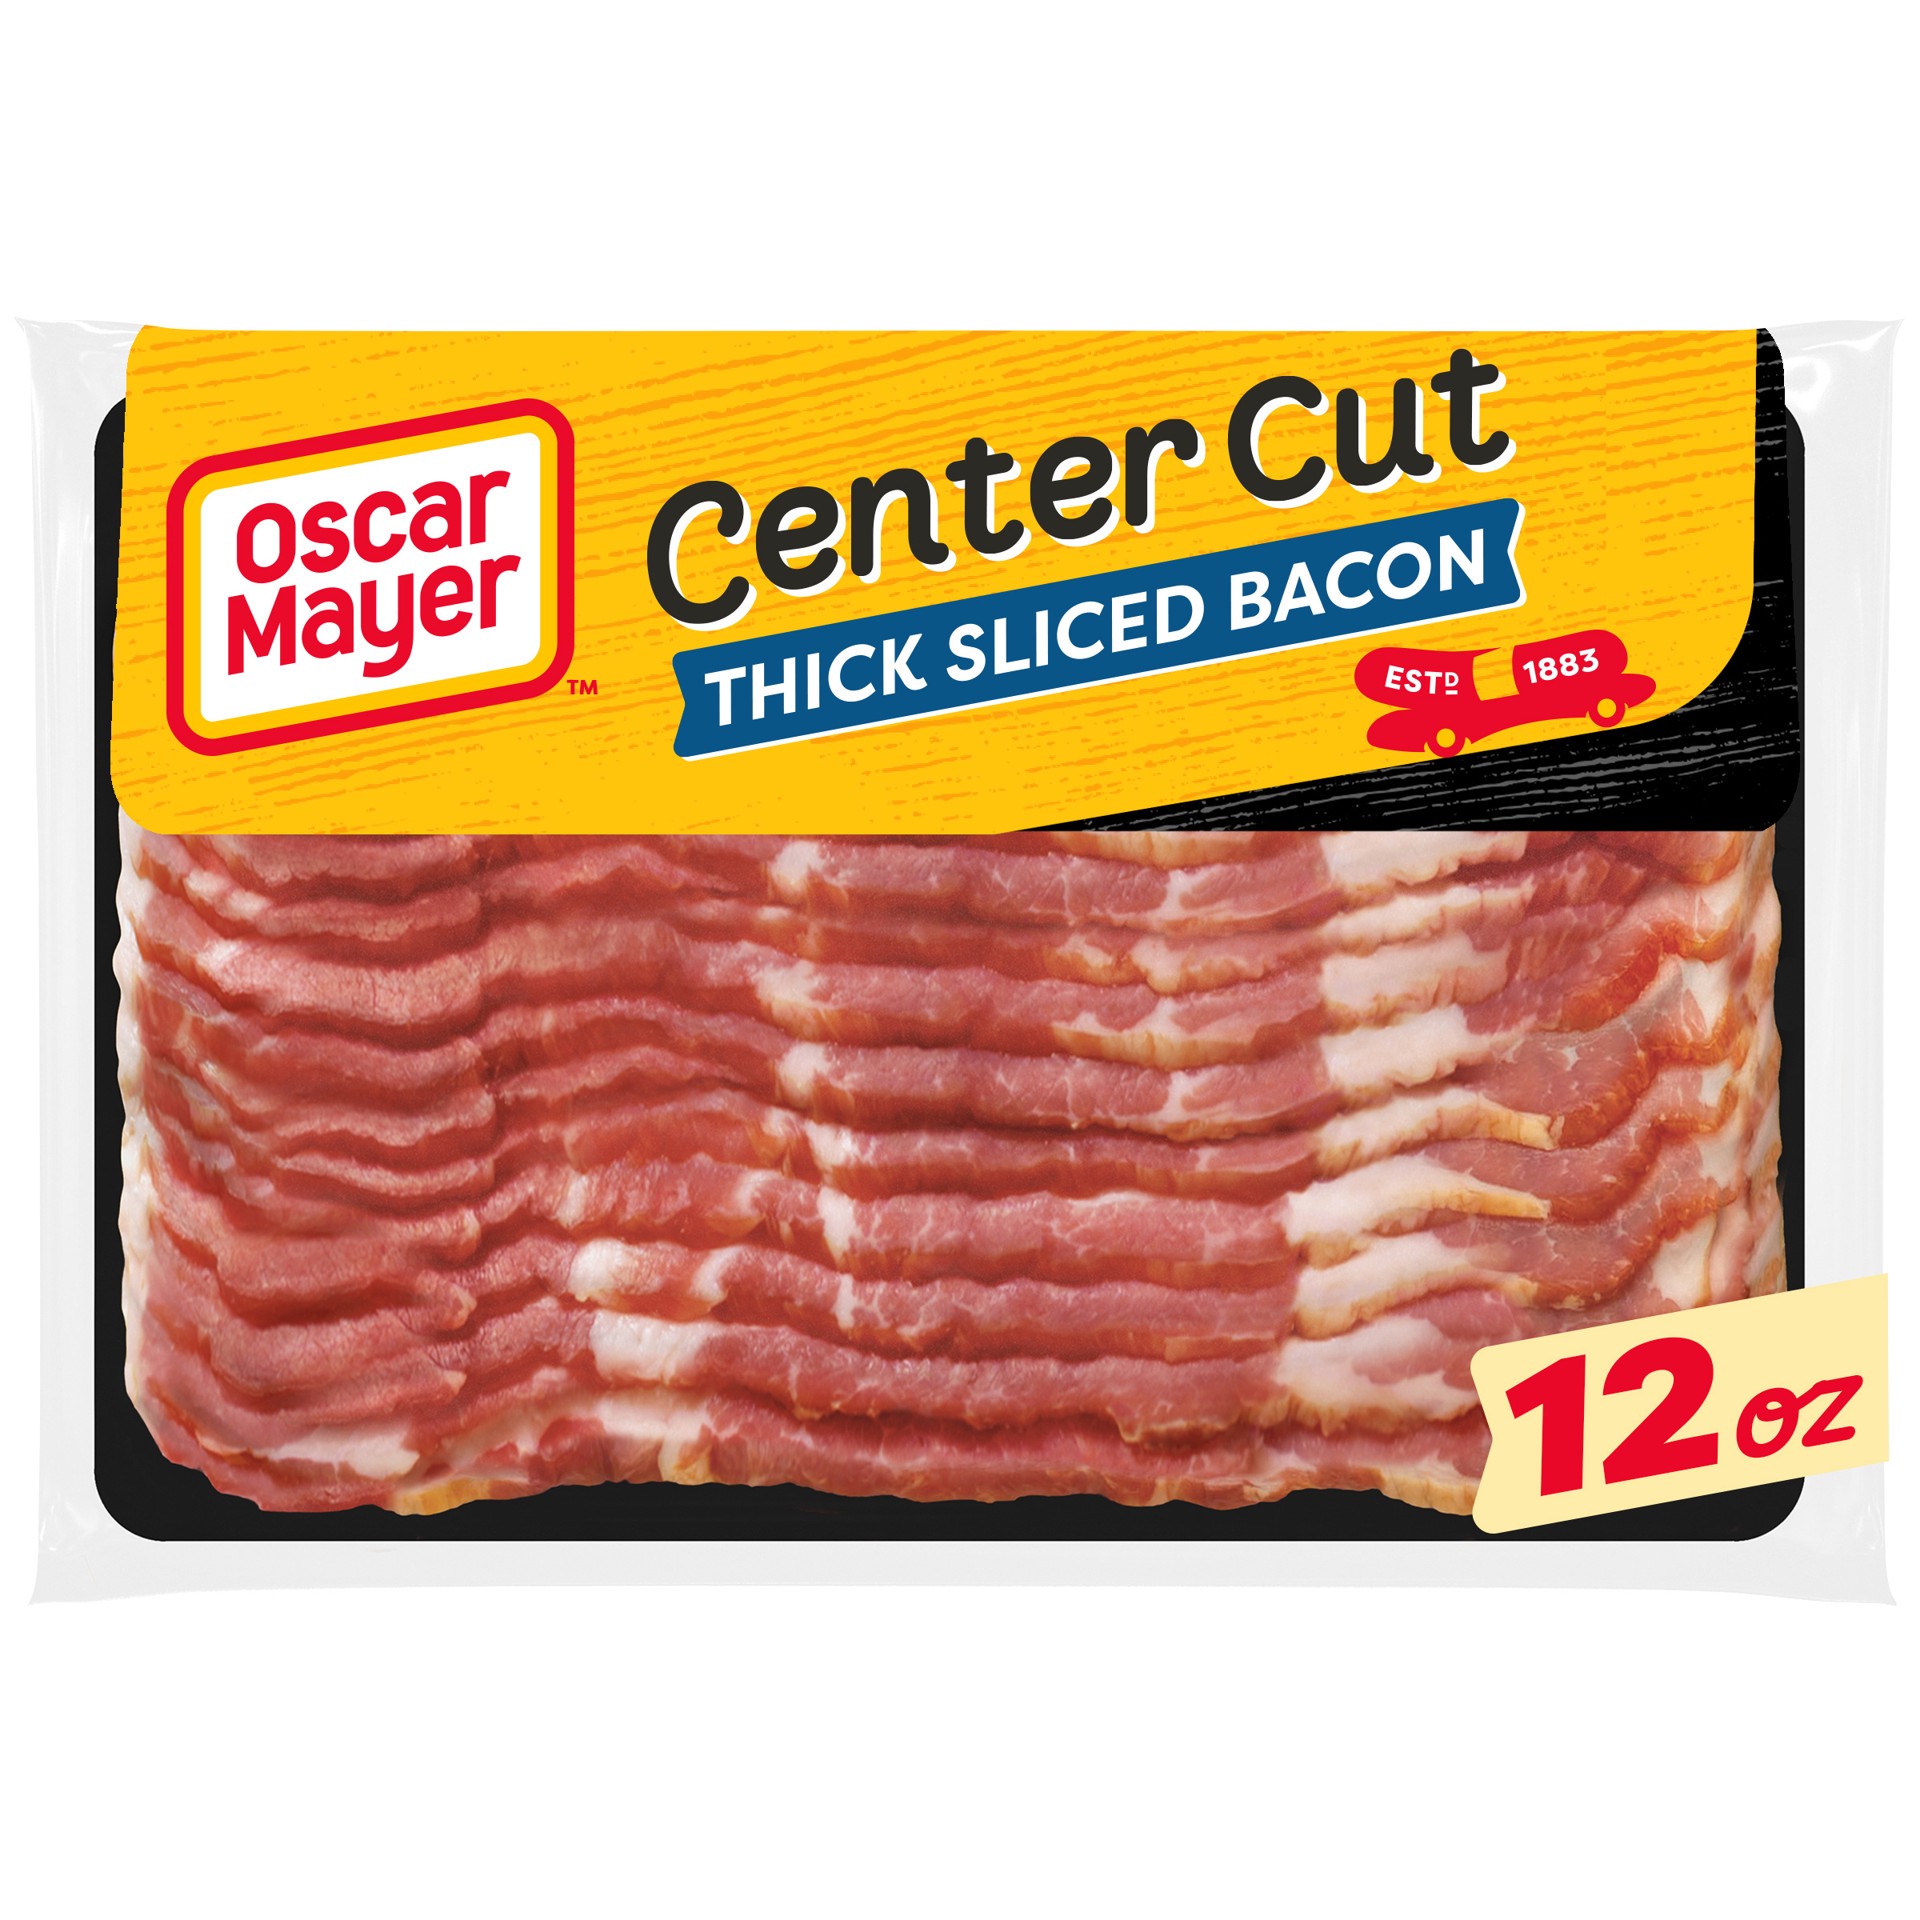 slide 1 of 4, Oscar Mayer Center Cut Thick Sliced Bacon, 12 oz